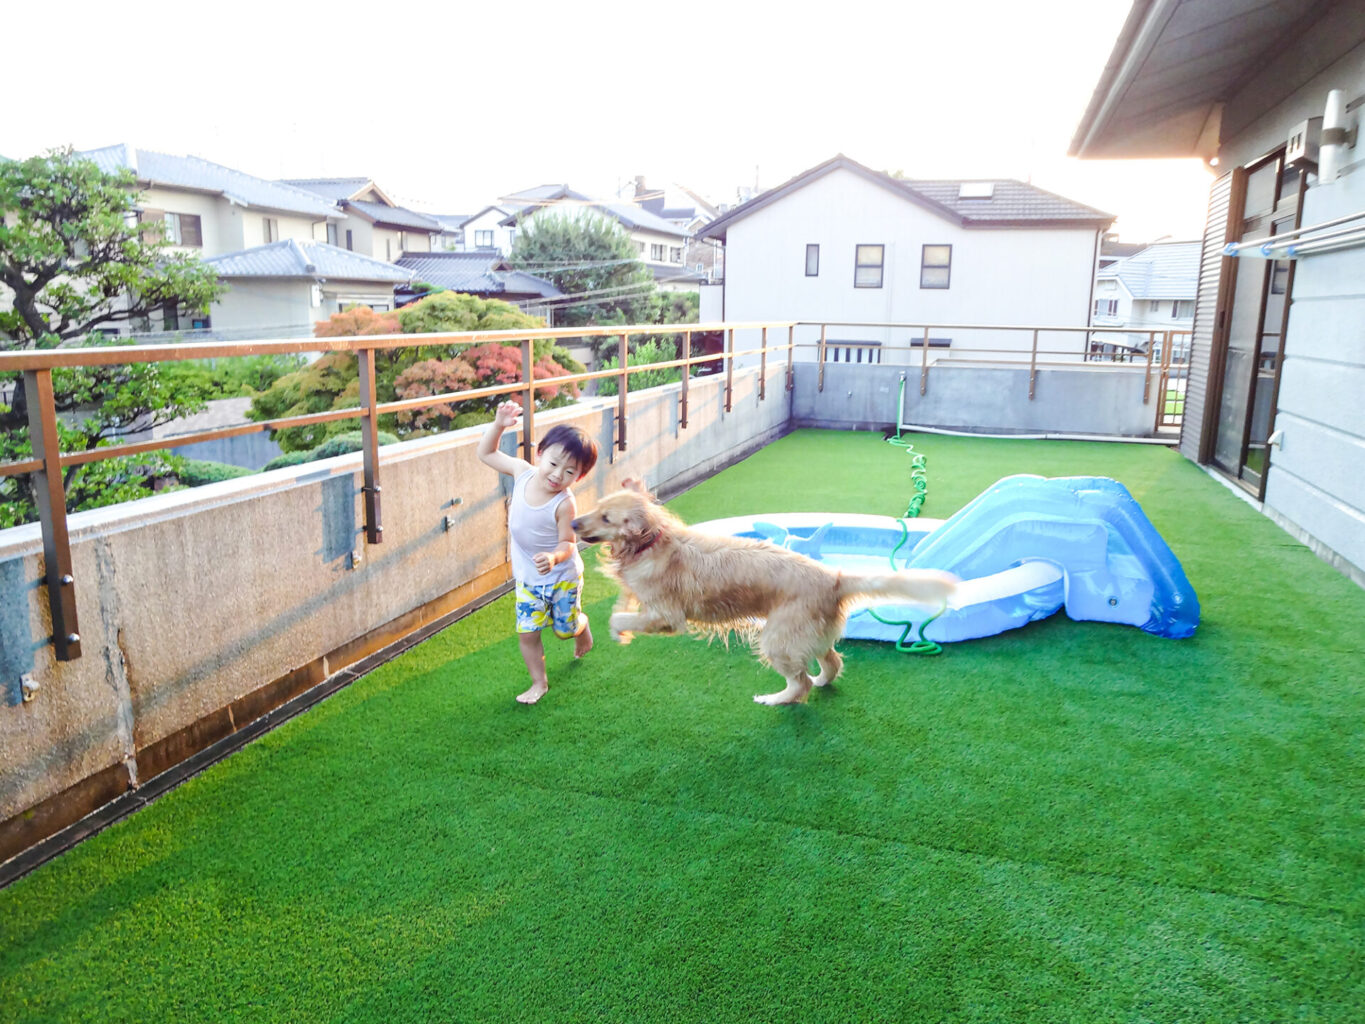 人工芝の庭で遊ぶ子どもと犬